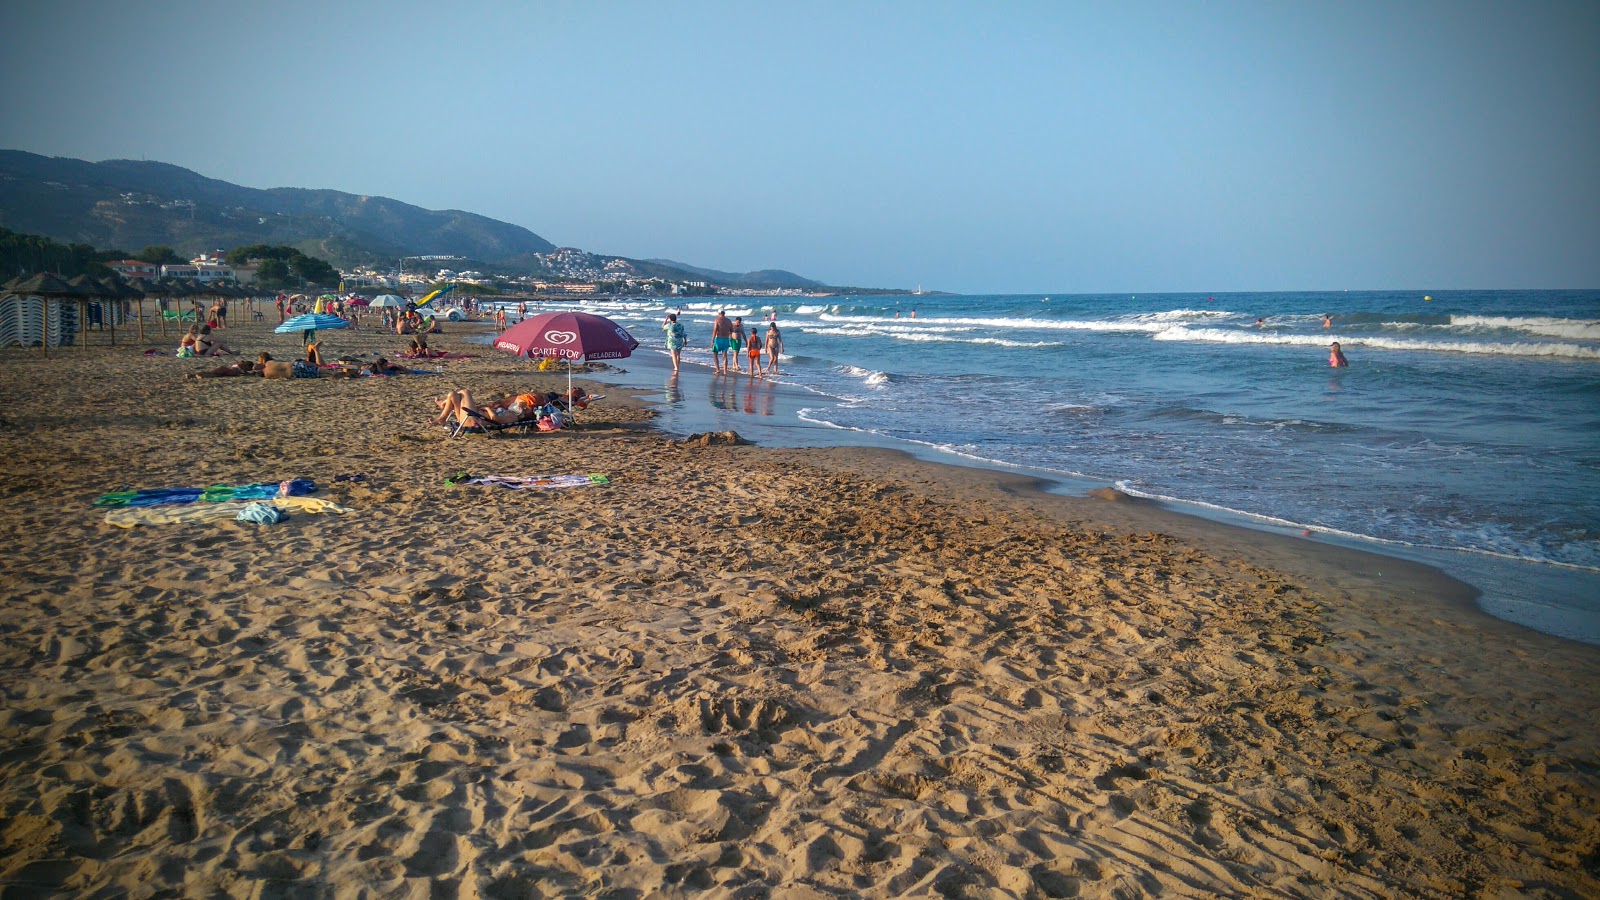 Roman Plajı'in fotoğrafı çok temiz temizlik seviyesi ile